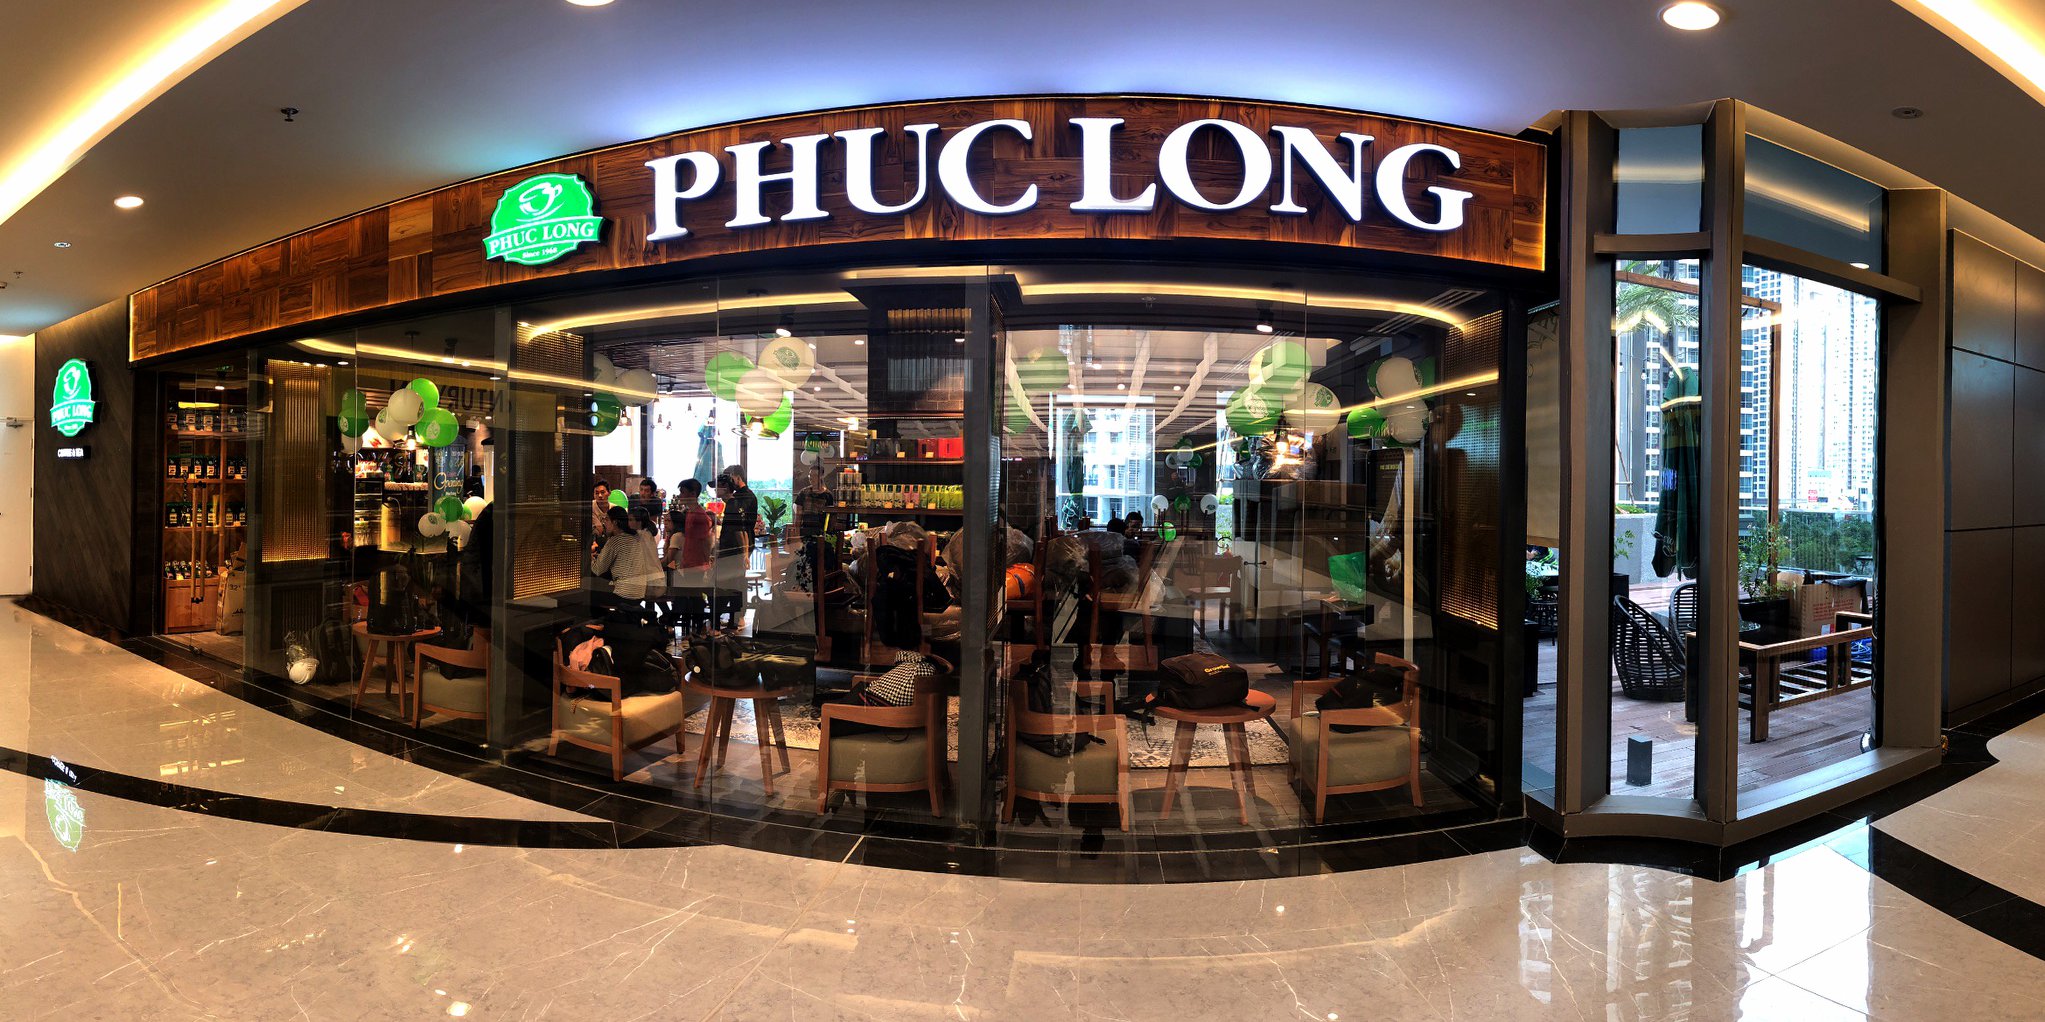 베트남 현지 사람들이 많이 가는 프랜차이즈 카페 총정리 - 푹 롱 카페